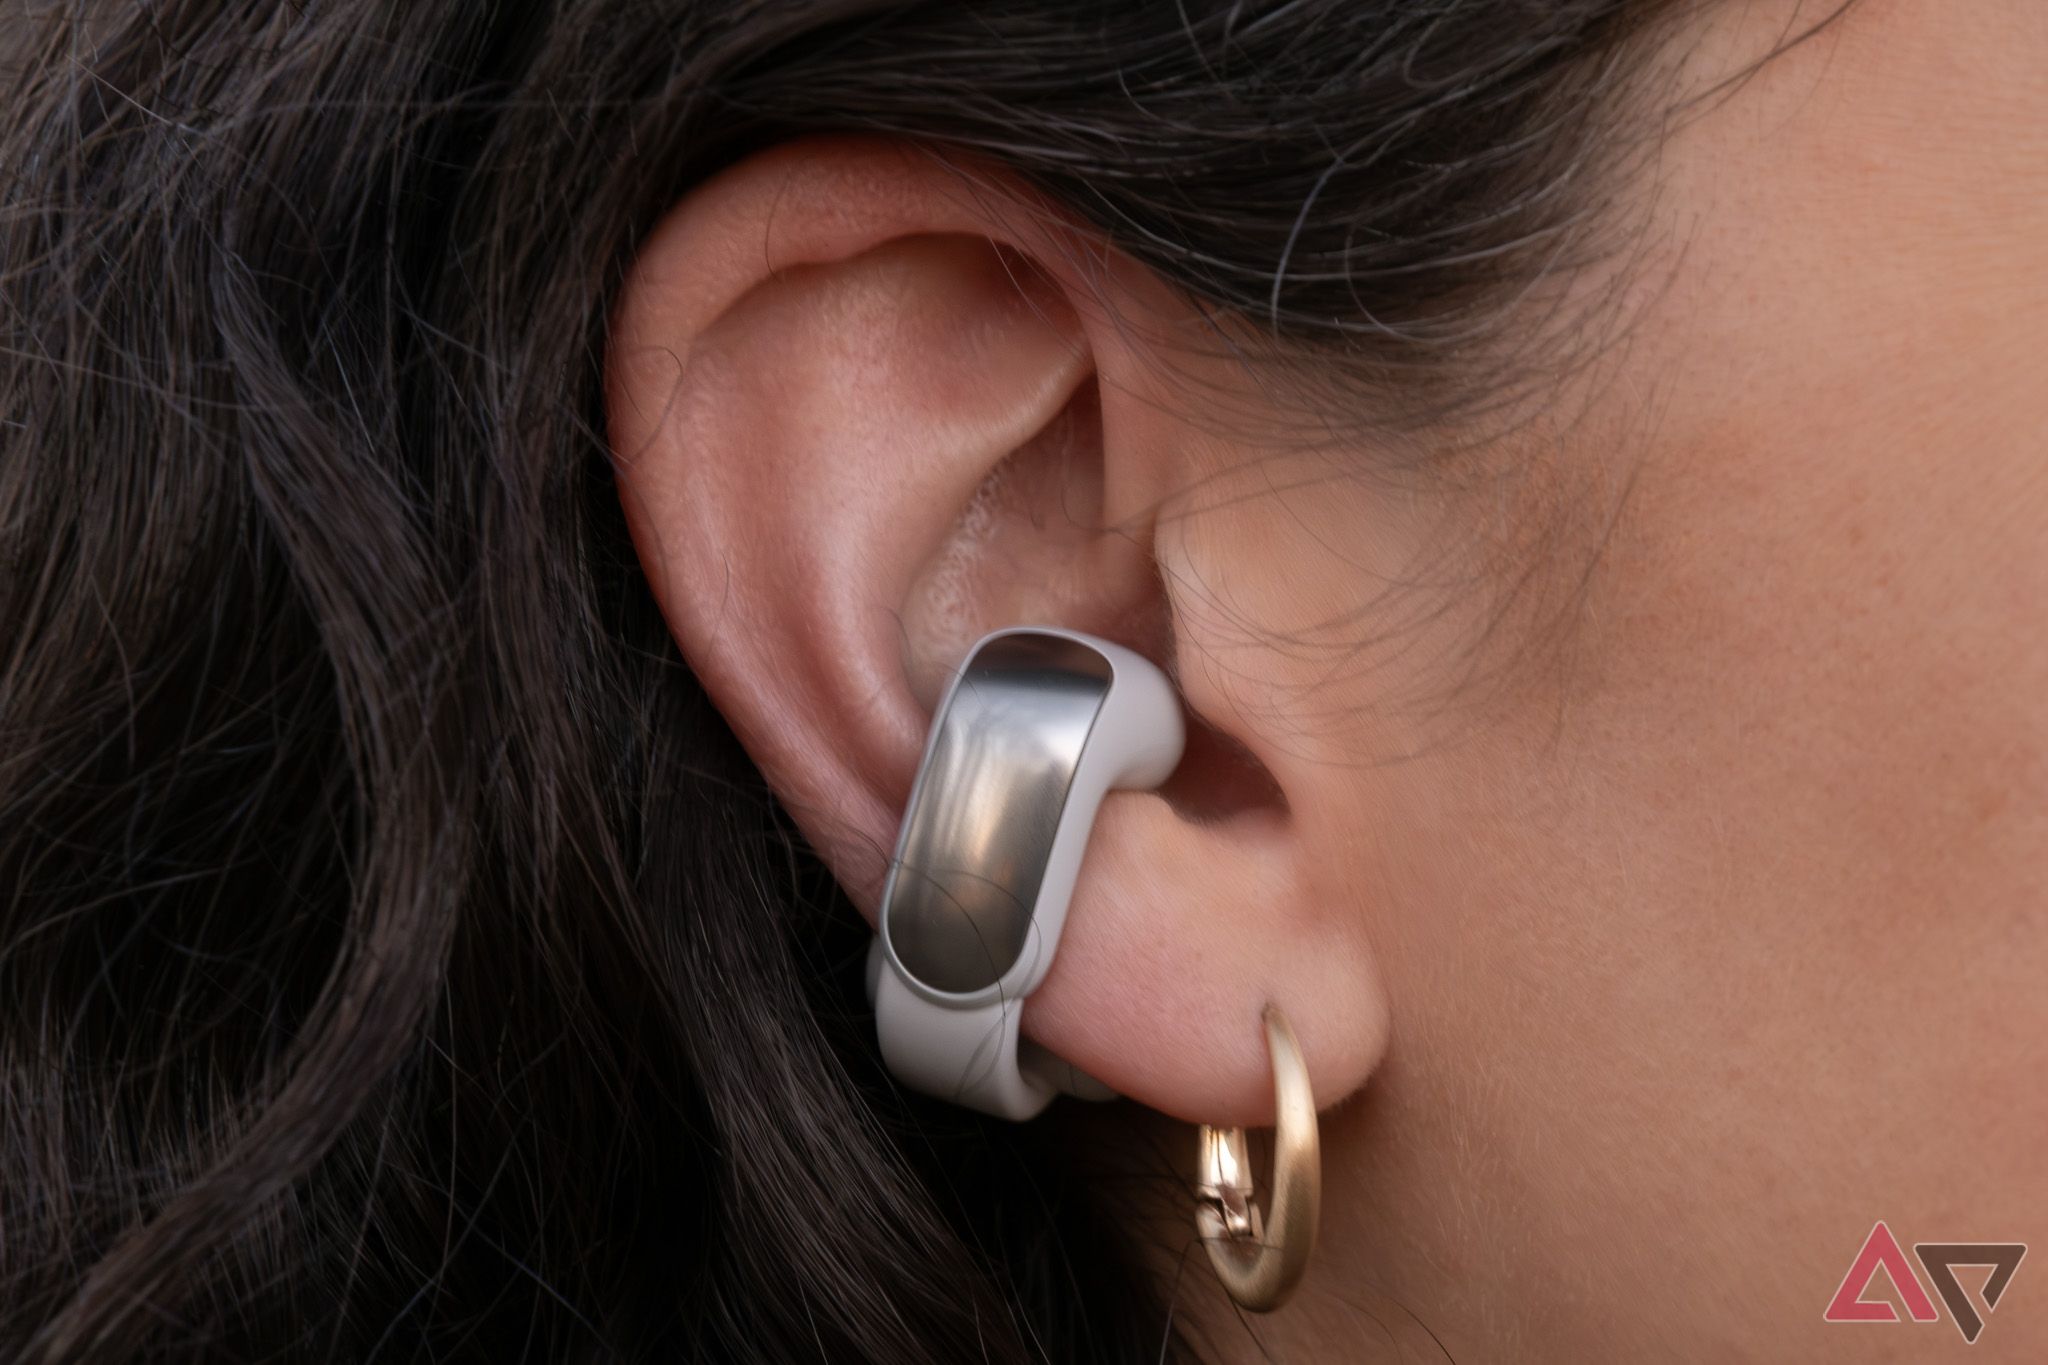 A Bose Ultra Open Earbud on an ear.